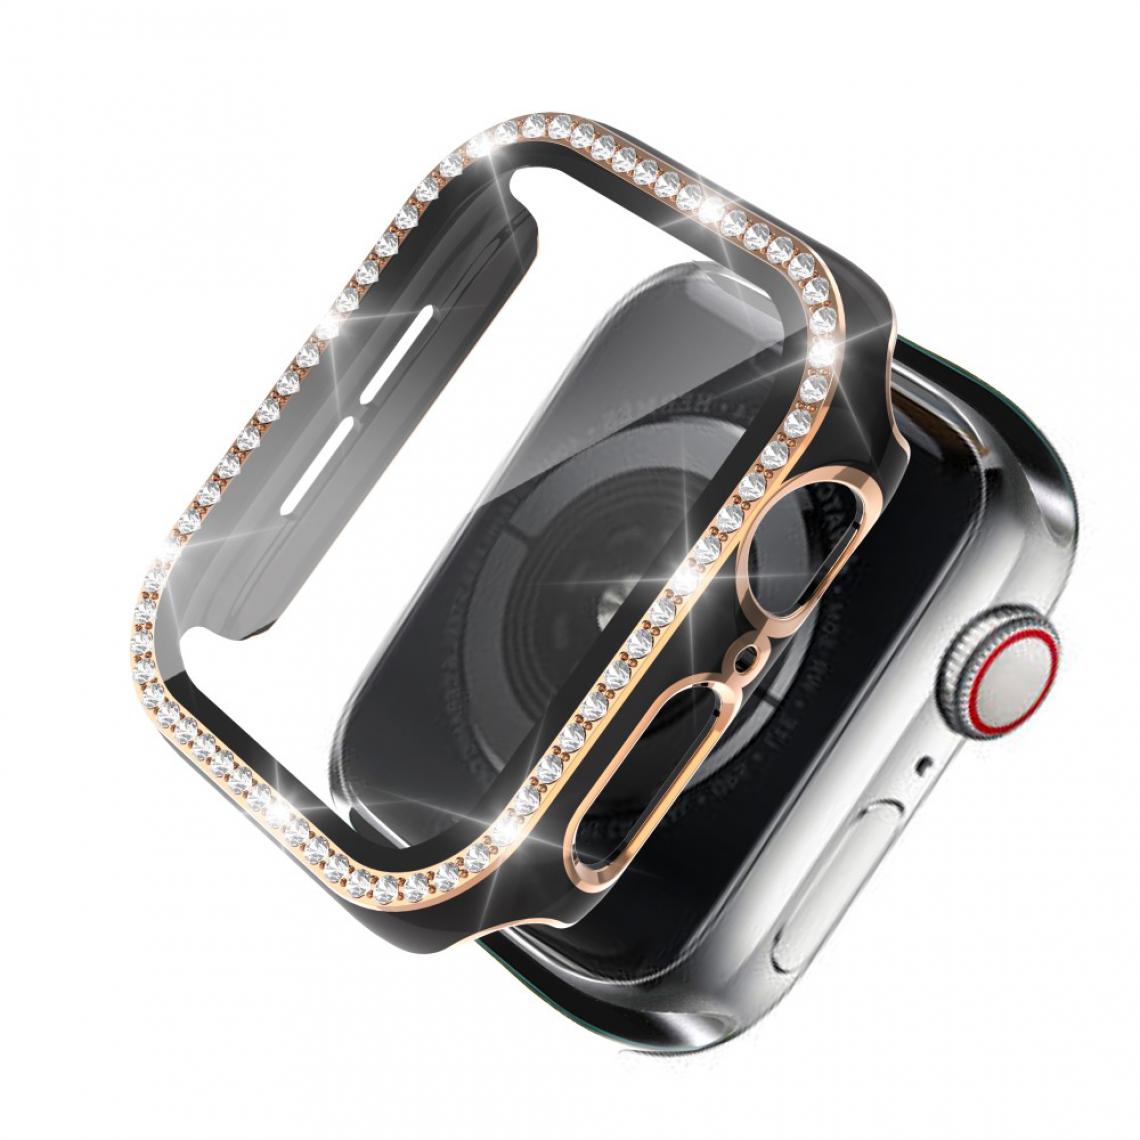 Other - Coque en TPU Strass en cristal de galvanoplastie bicolore noir/or pour votre Apple Watch 1/2/3 42mm - Accessoires bracelet connecté